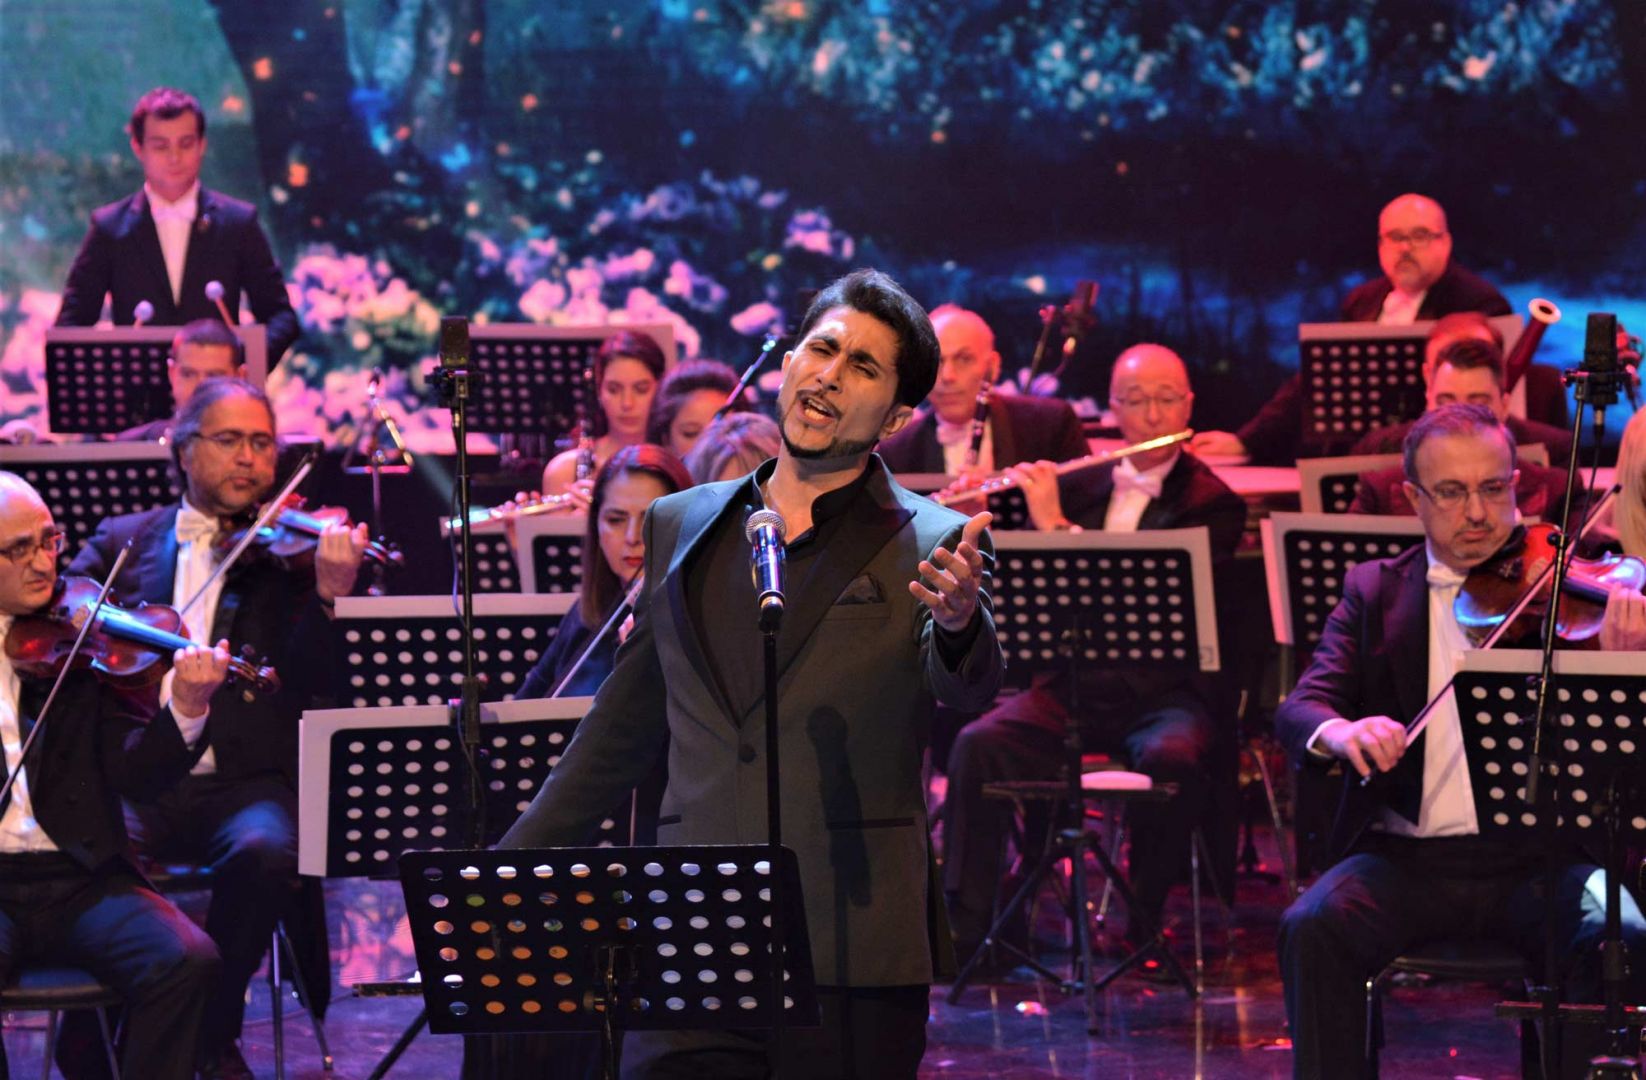 Одна из самых красивых певиц Азербайджана отмечена ТЮРКСОЙ (ВИДЕО, ФОТО)